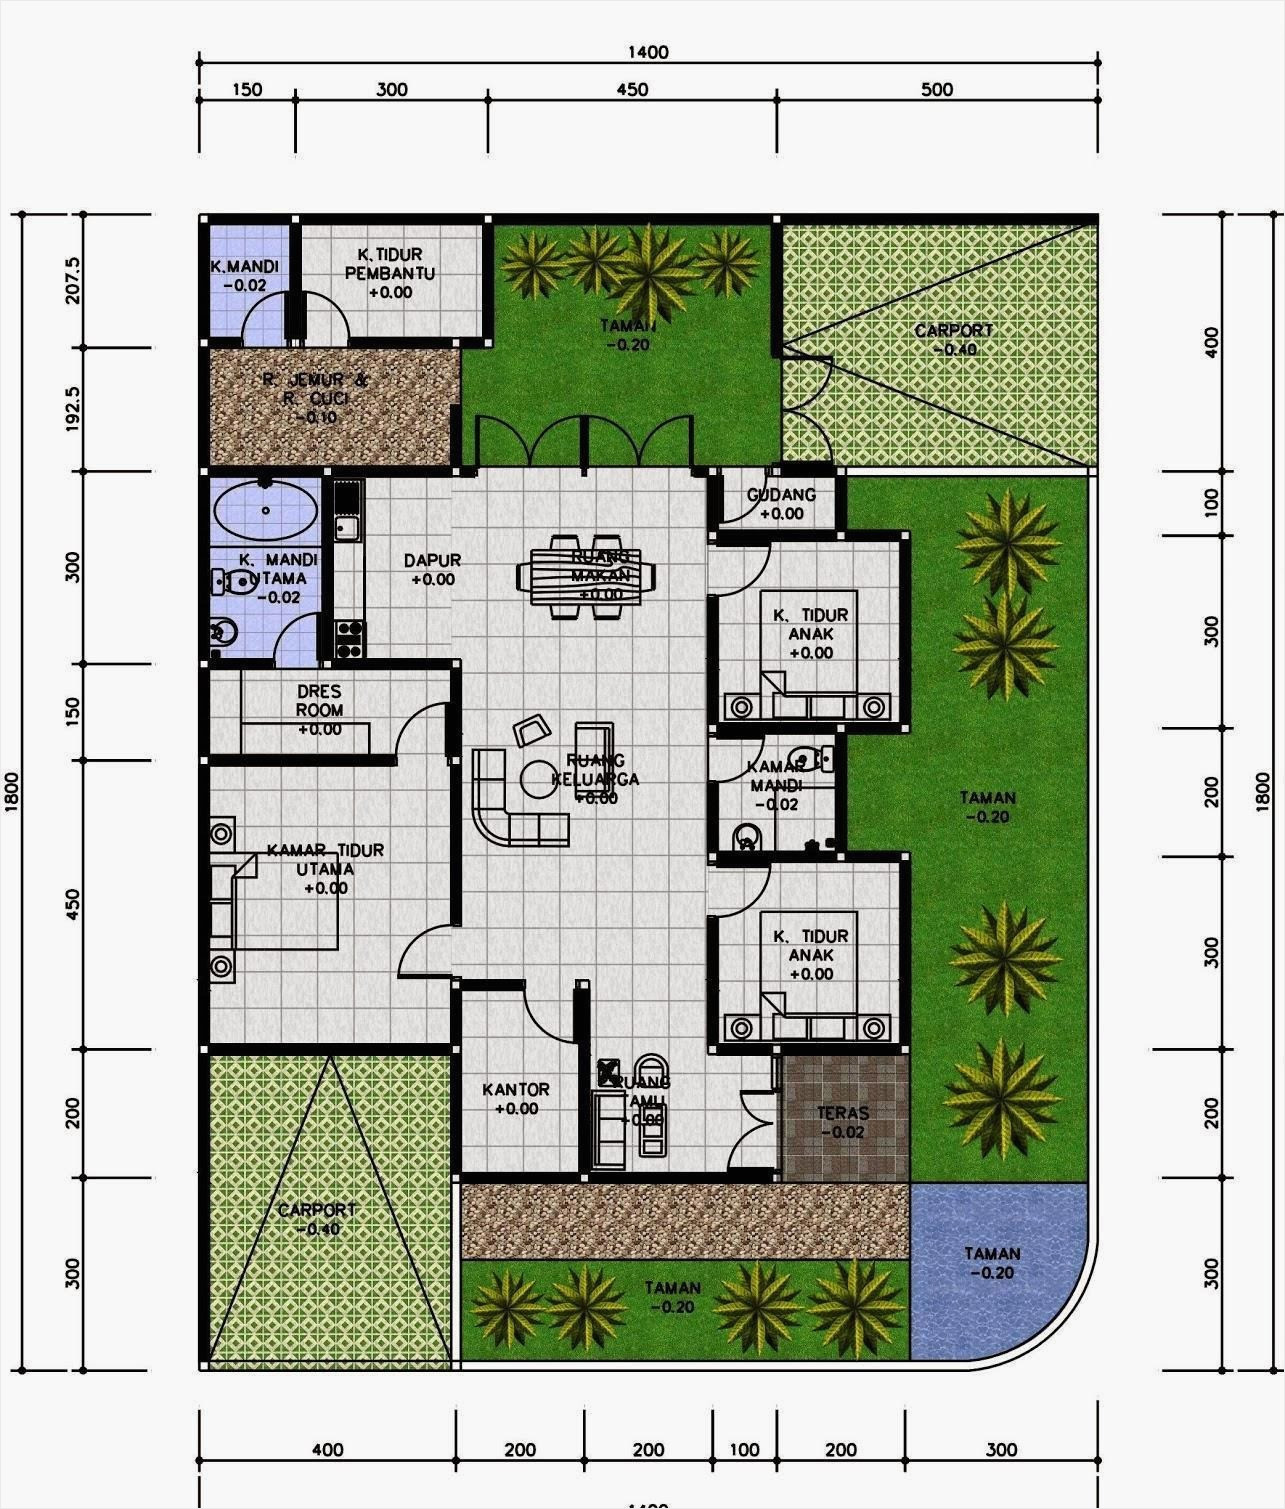 Konsep 28 Desain Rumah Minimalis Ukuran 12x12